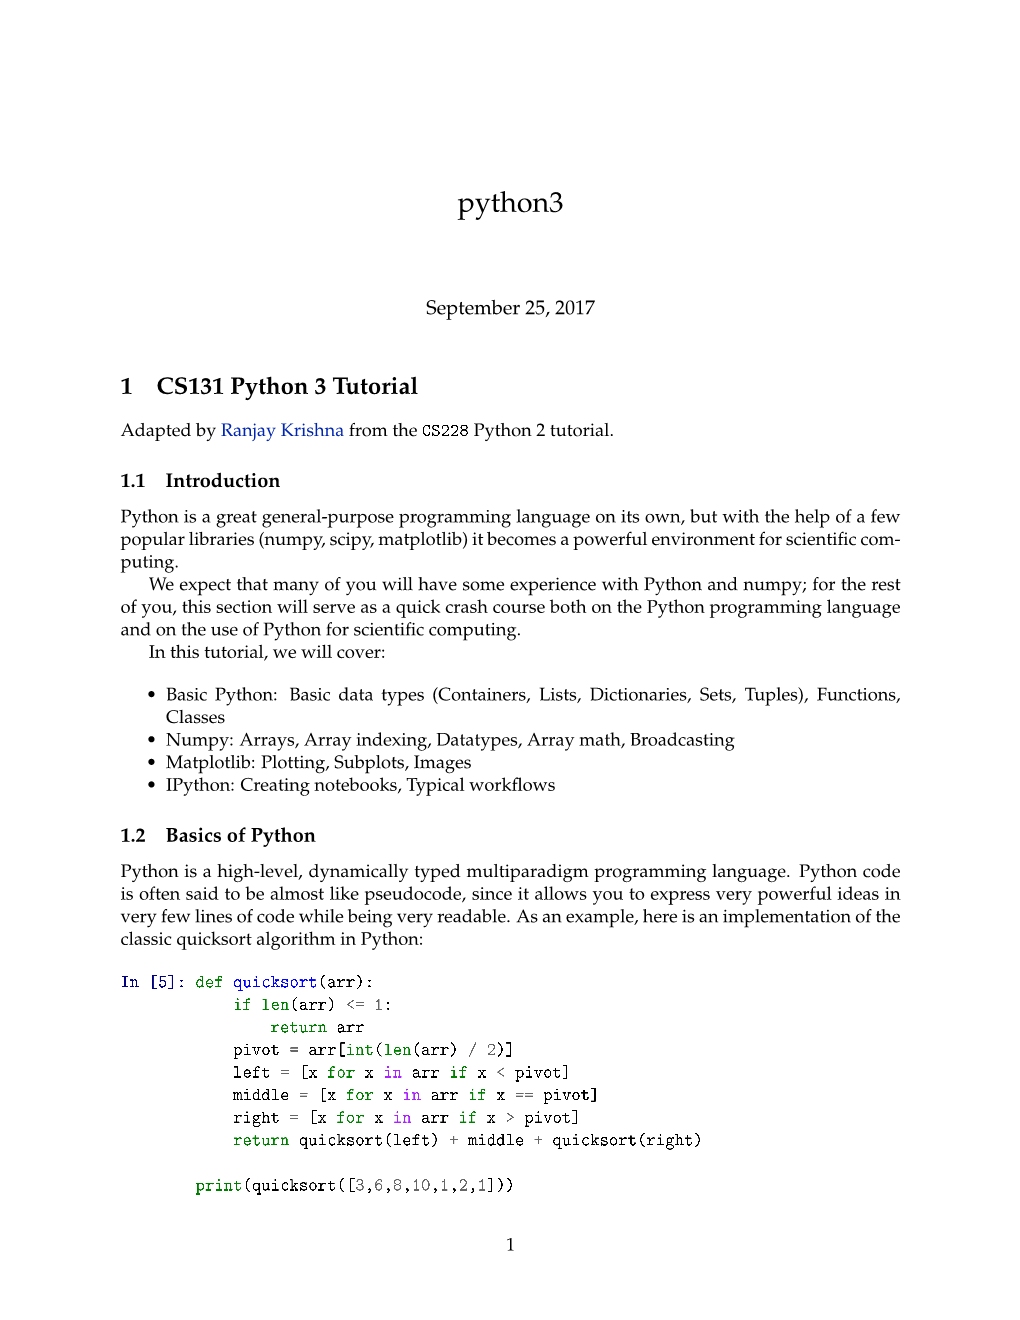 Proficiency in Python (Numpy)